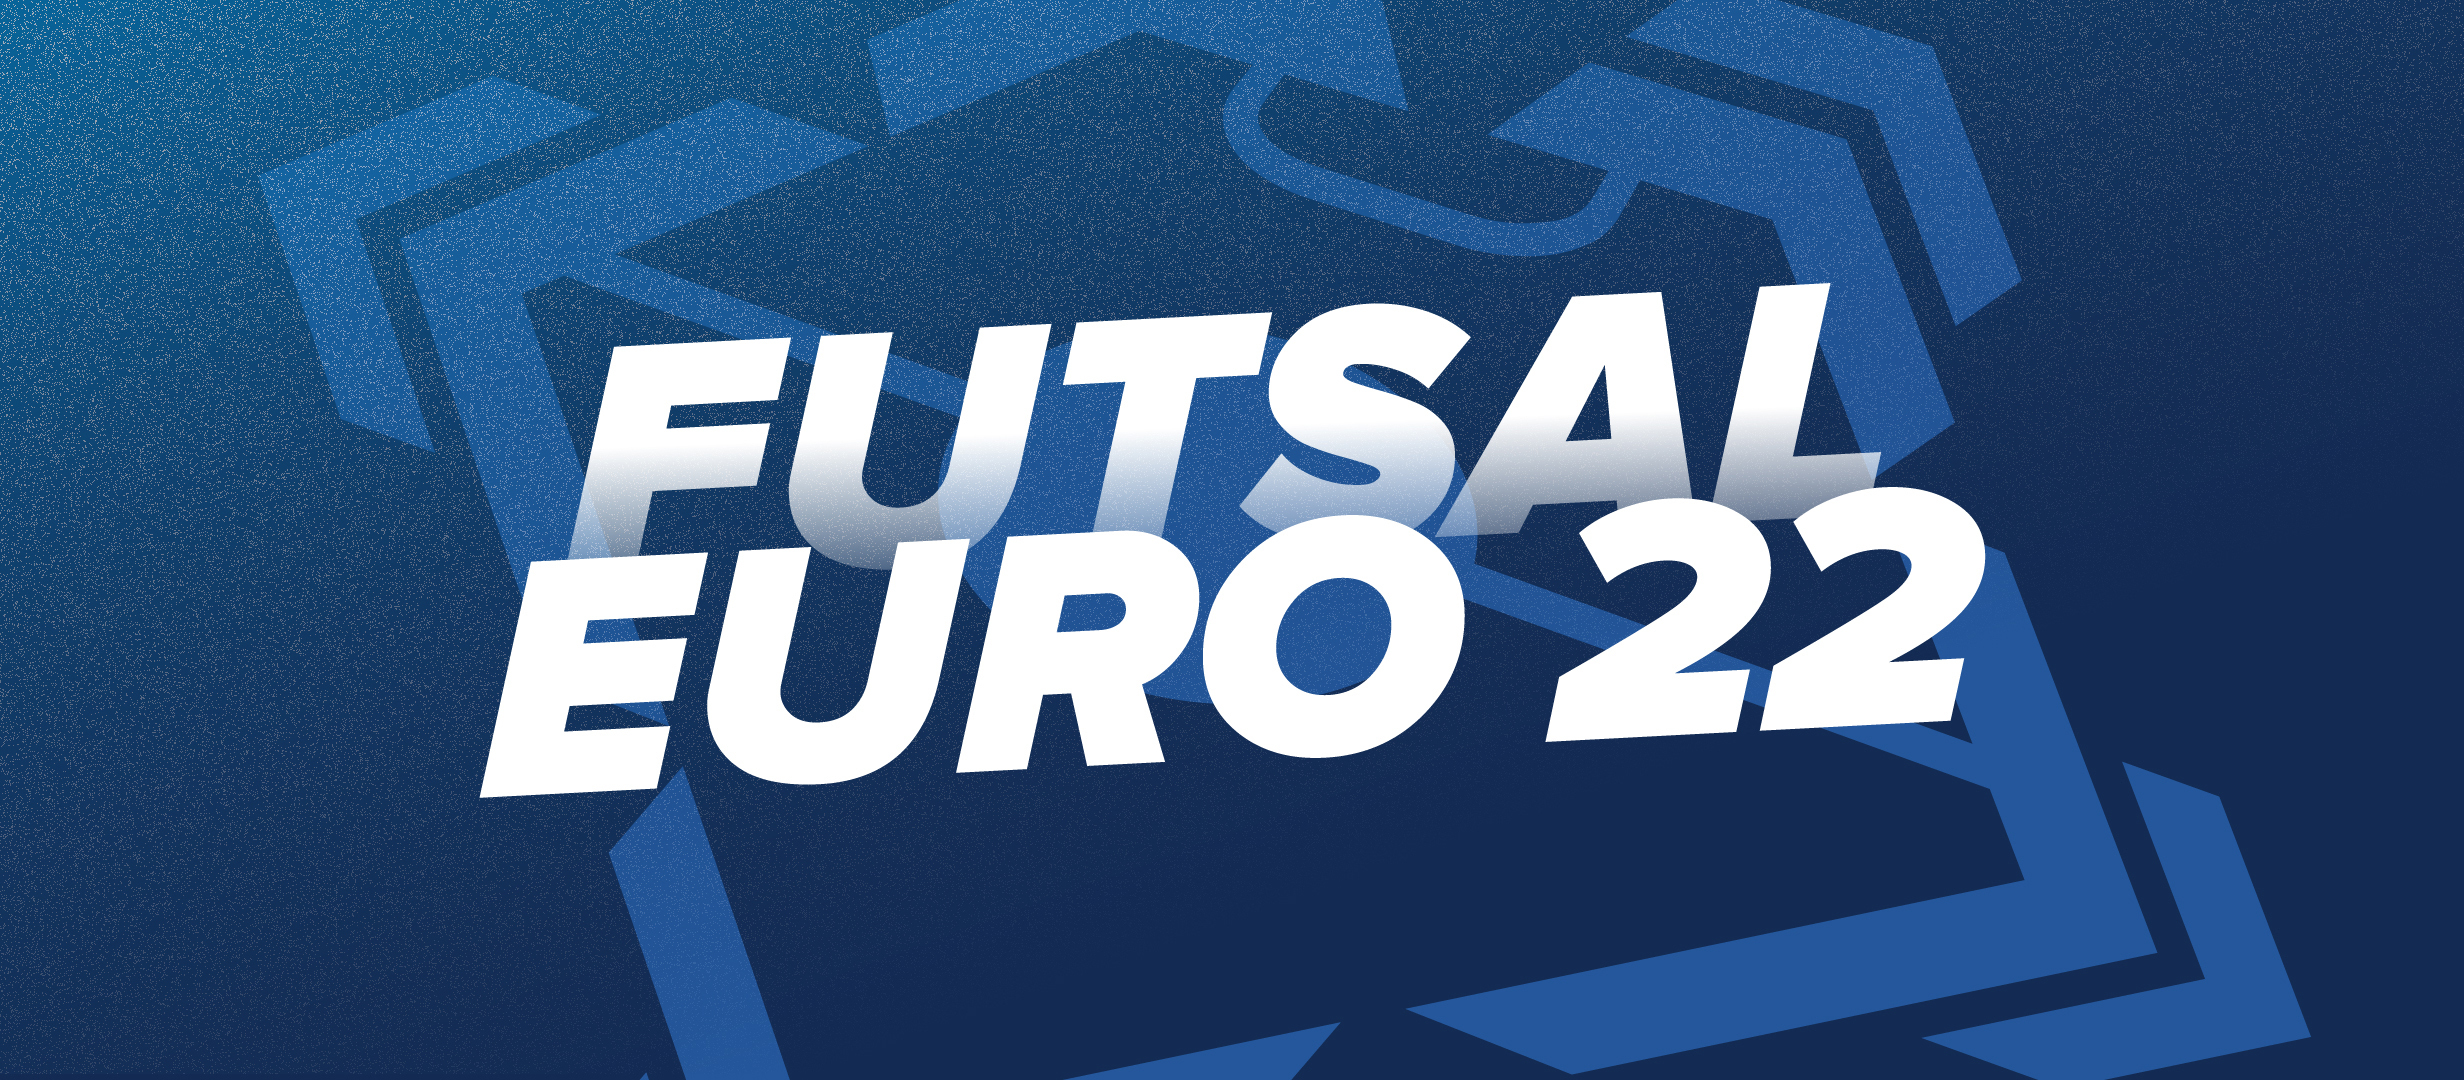 EURO Futsal 2022: apuestas, cuotas y pronósticos